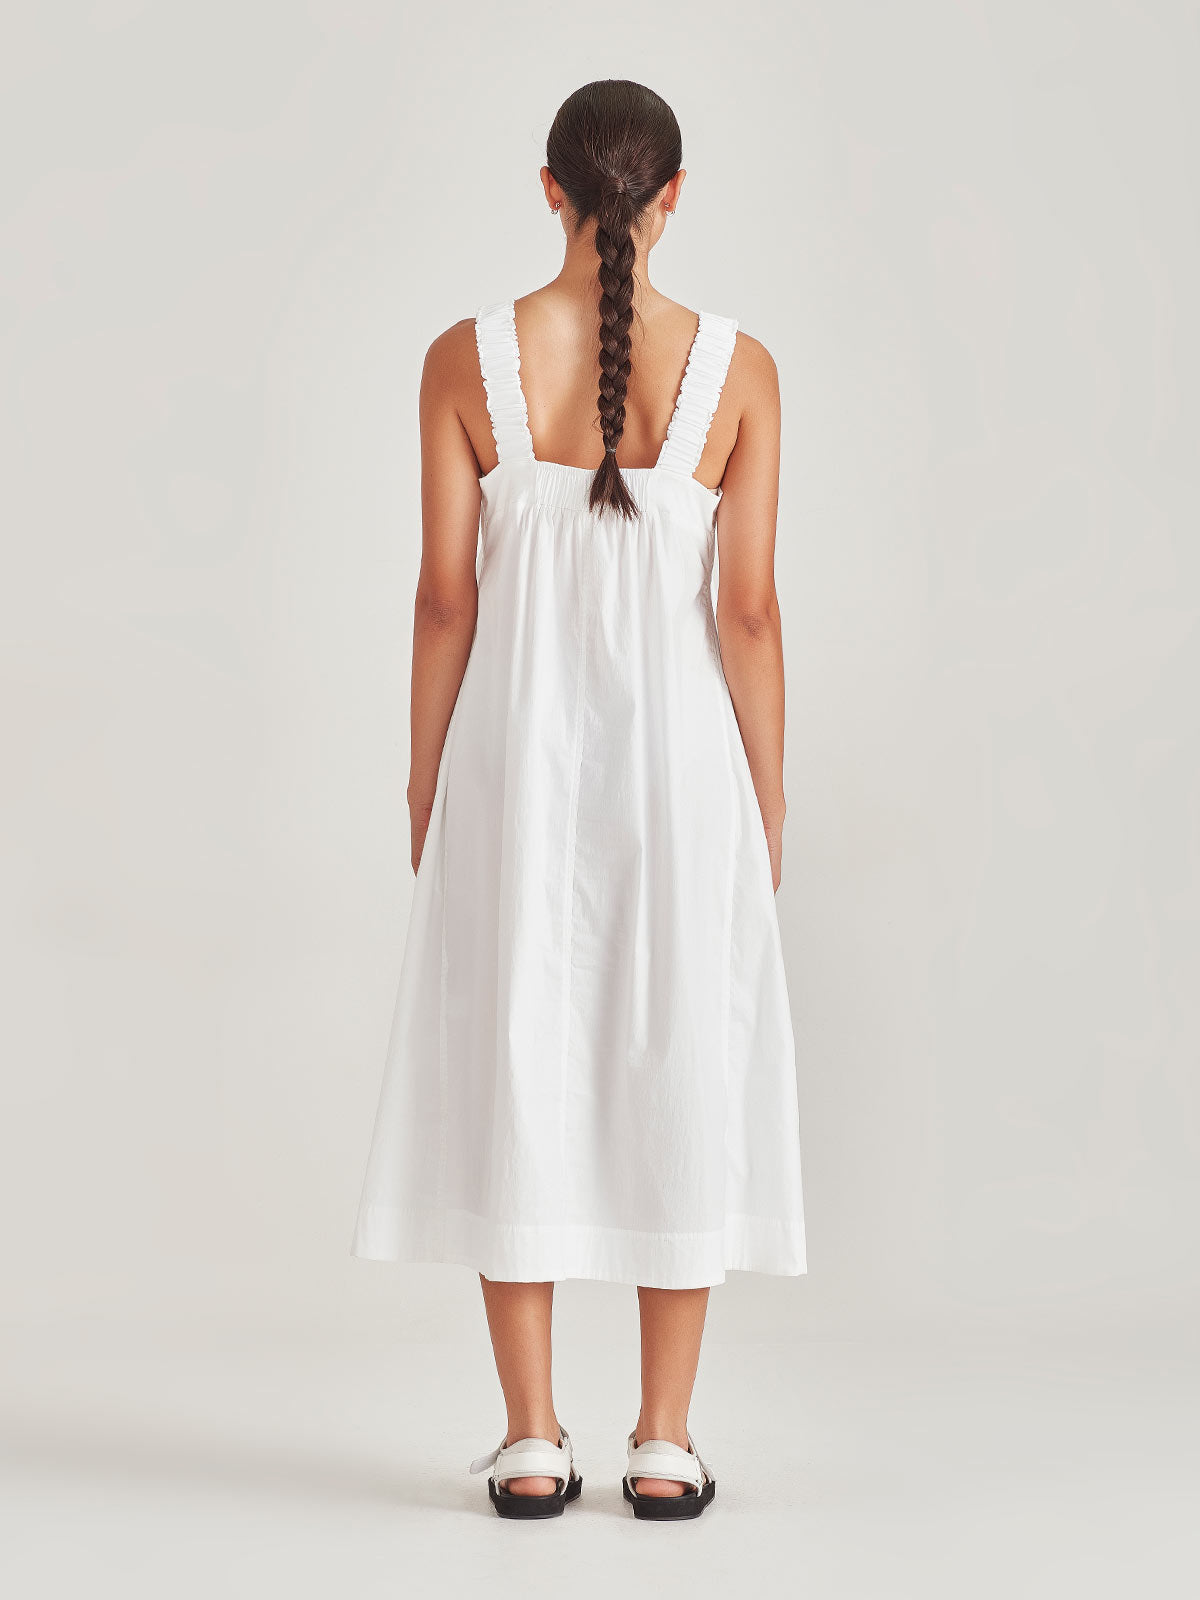 Dresses | Sills + Co - Women's Designer Clothing